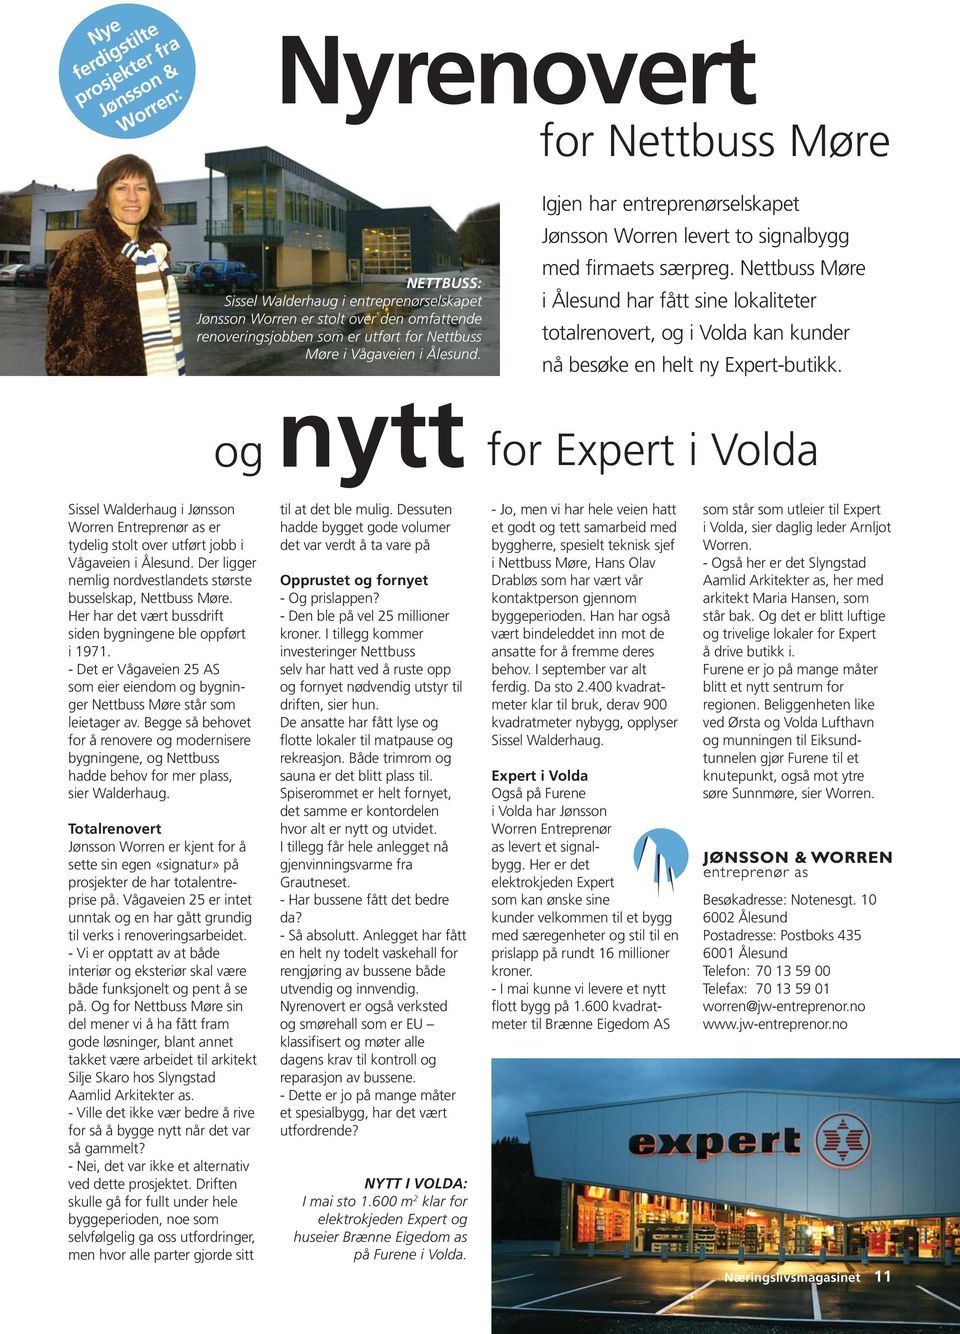 Nettbuss Møre i Ålesund har fått sine lokaliteter totalrenovert, og i Volda kan kunder nå besøke en helt ny Expert-butikk.